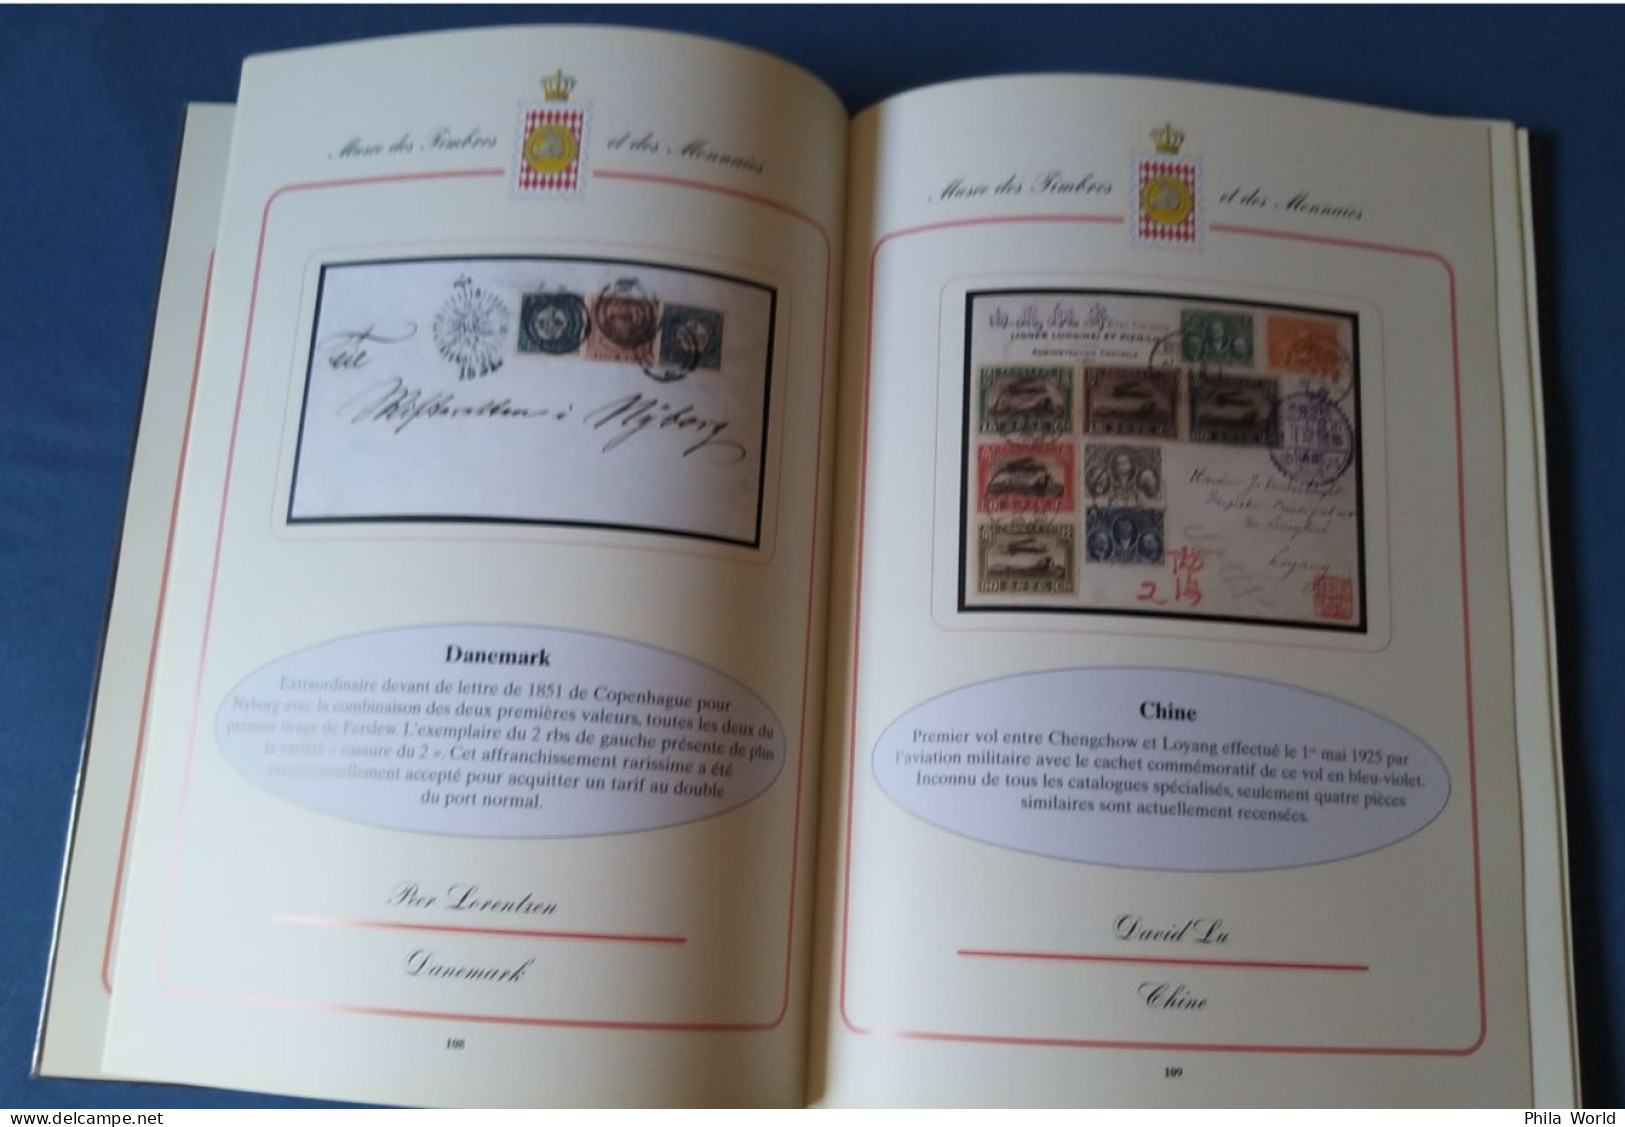 MONACO MonacoPhil 2002 Catalogue luxe Exposition Musée 100 timbres documents les plus rares